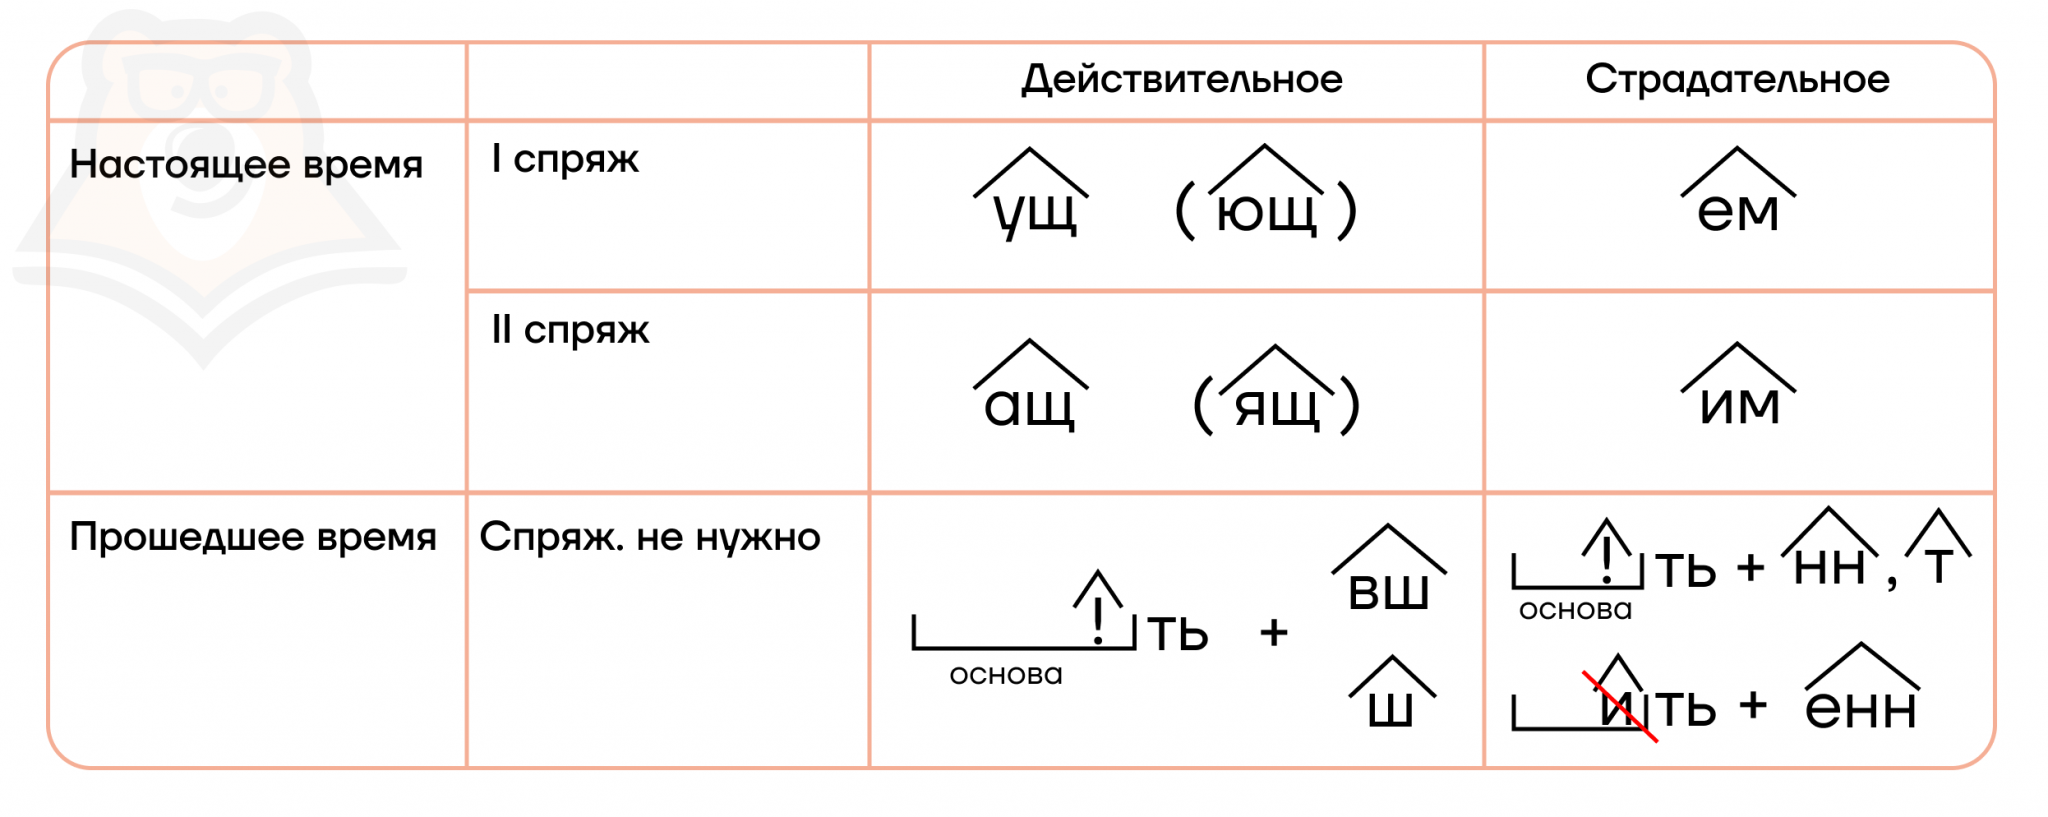 Приставка и суффикс морфемы. Суффиксы прилагательных и глаголов русский язык. Покажи картинку суффикса Чак.